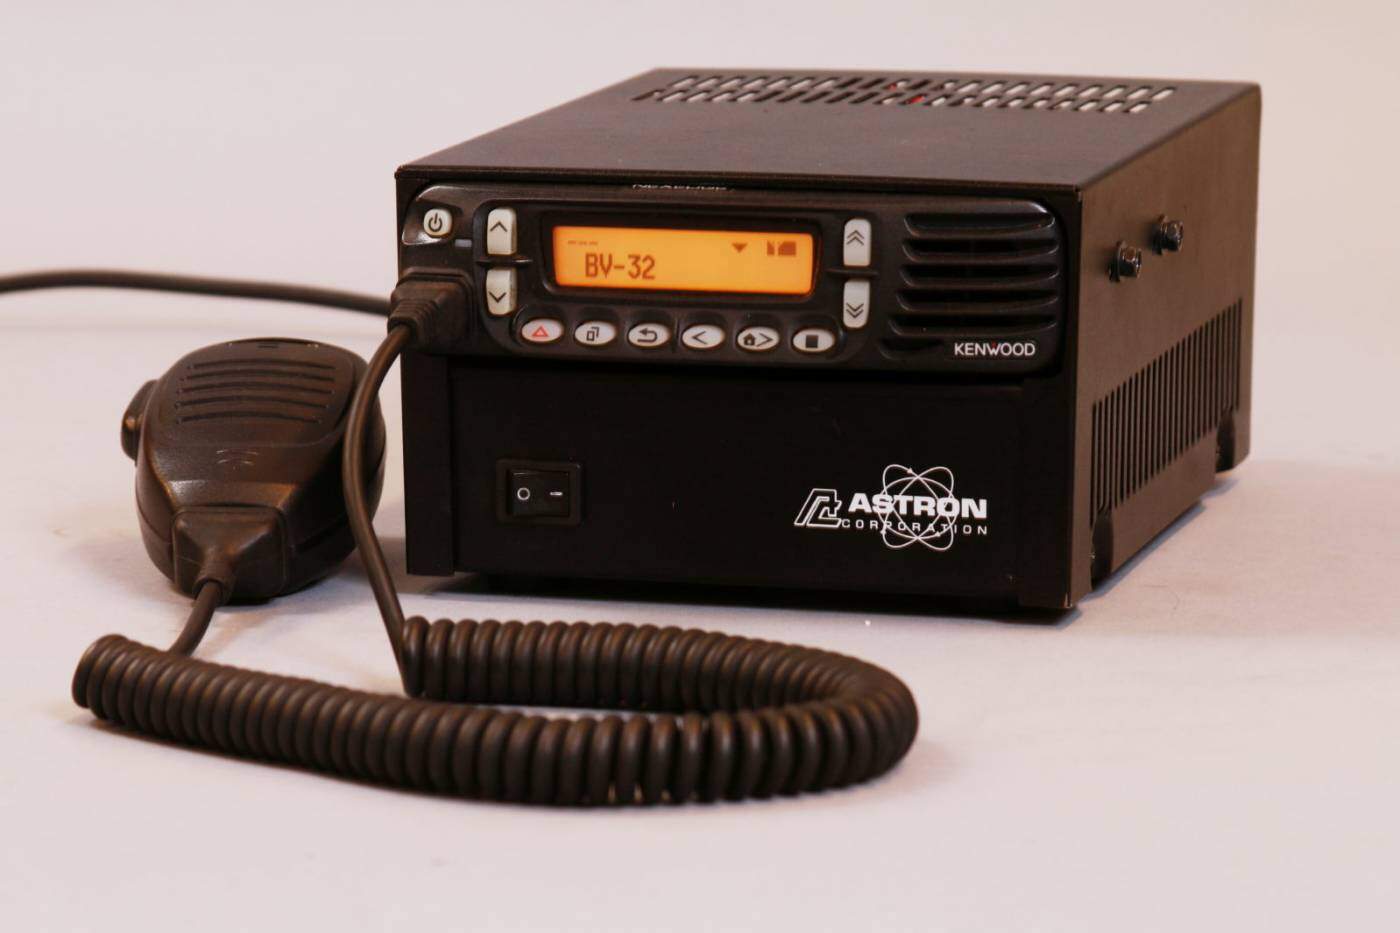 Kenwood NX 800 Base Station radio